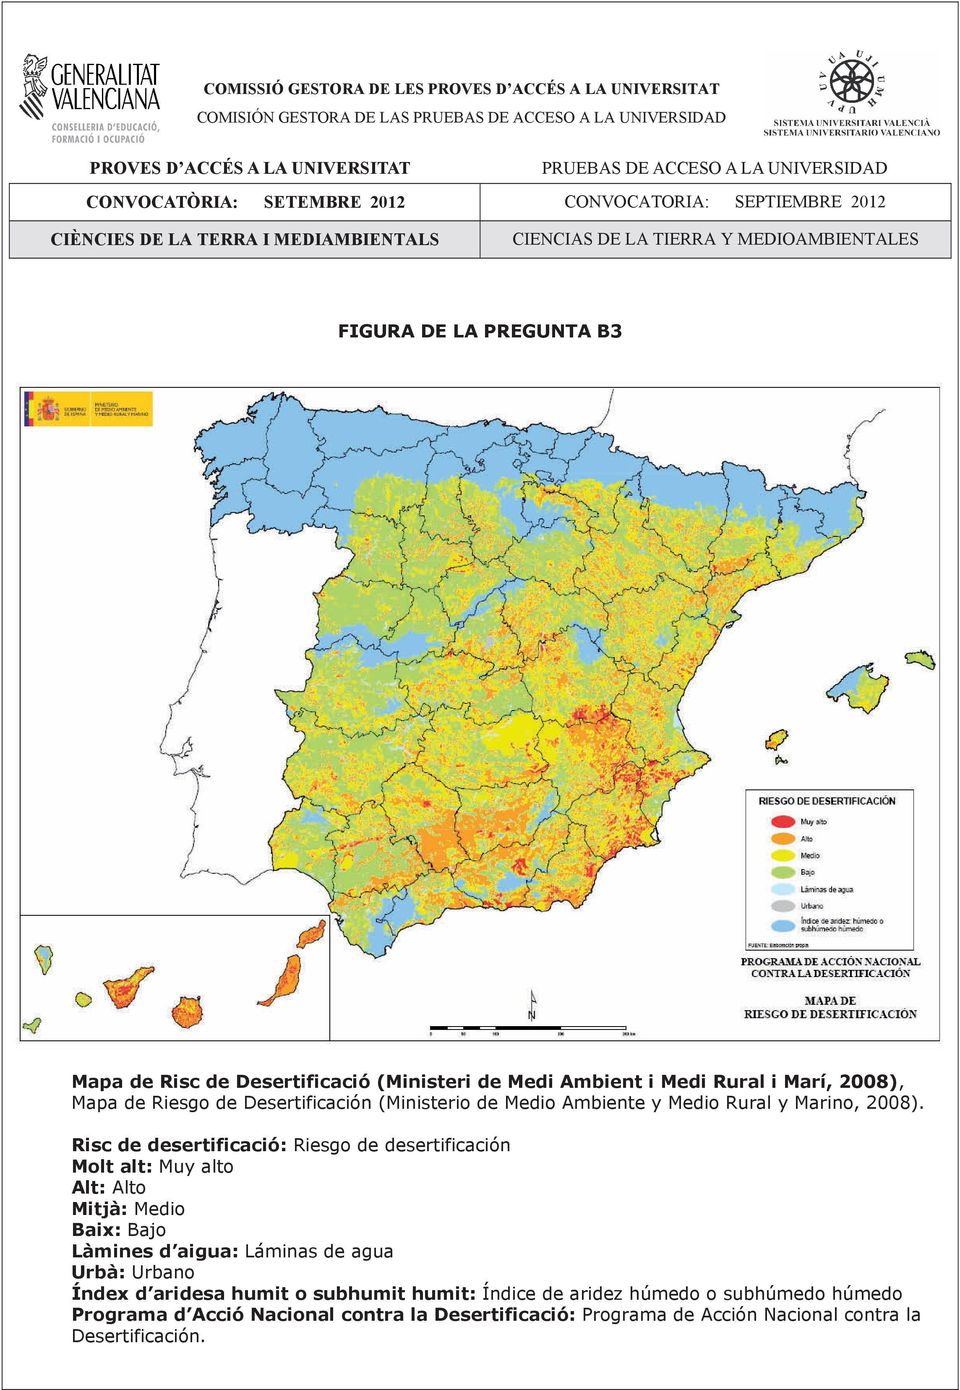 Ambient i Medi Rural i Marí, 2008), Mapa de Riesgo de Desertificación (Ministerio de Medio Ambiente y Medio Rural y Marino, 2008).